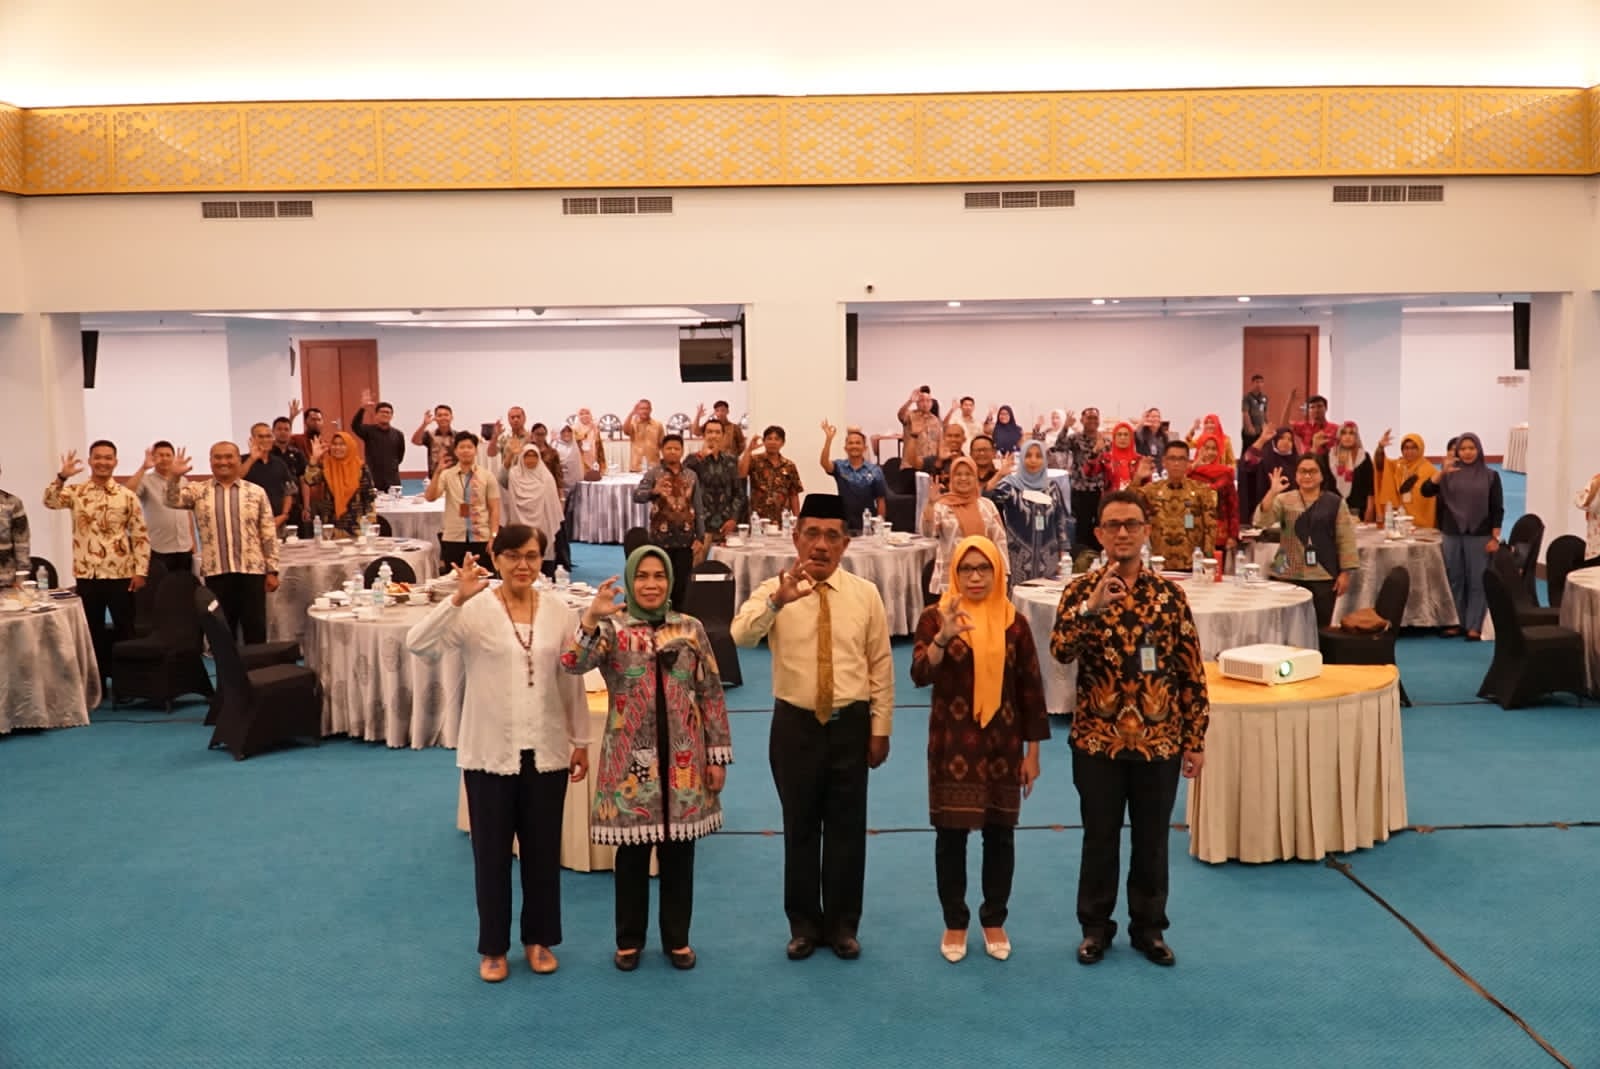 Kakanwil Ajak Pemerintah Kabupaten/Kota Bangun Sulawesi Selatan Sebagai Wilayah Ramah HAM